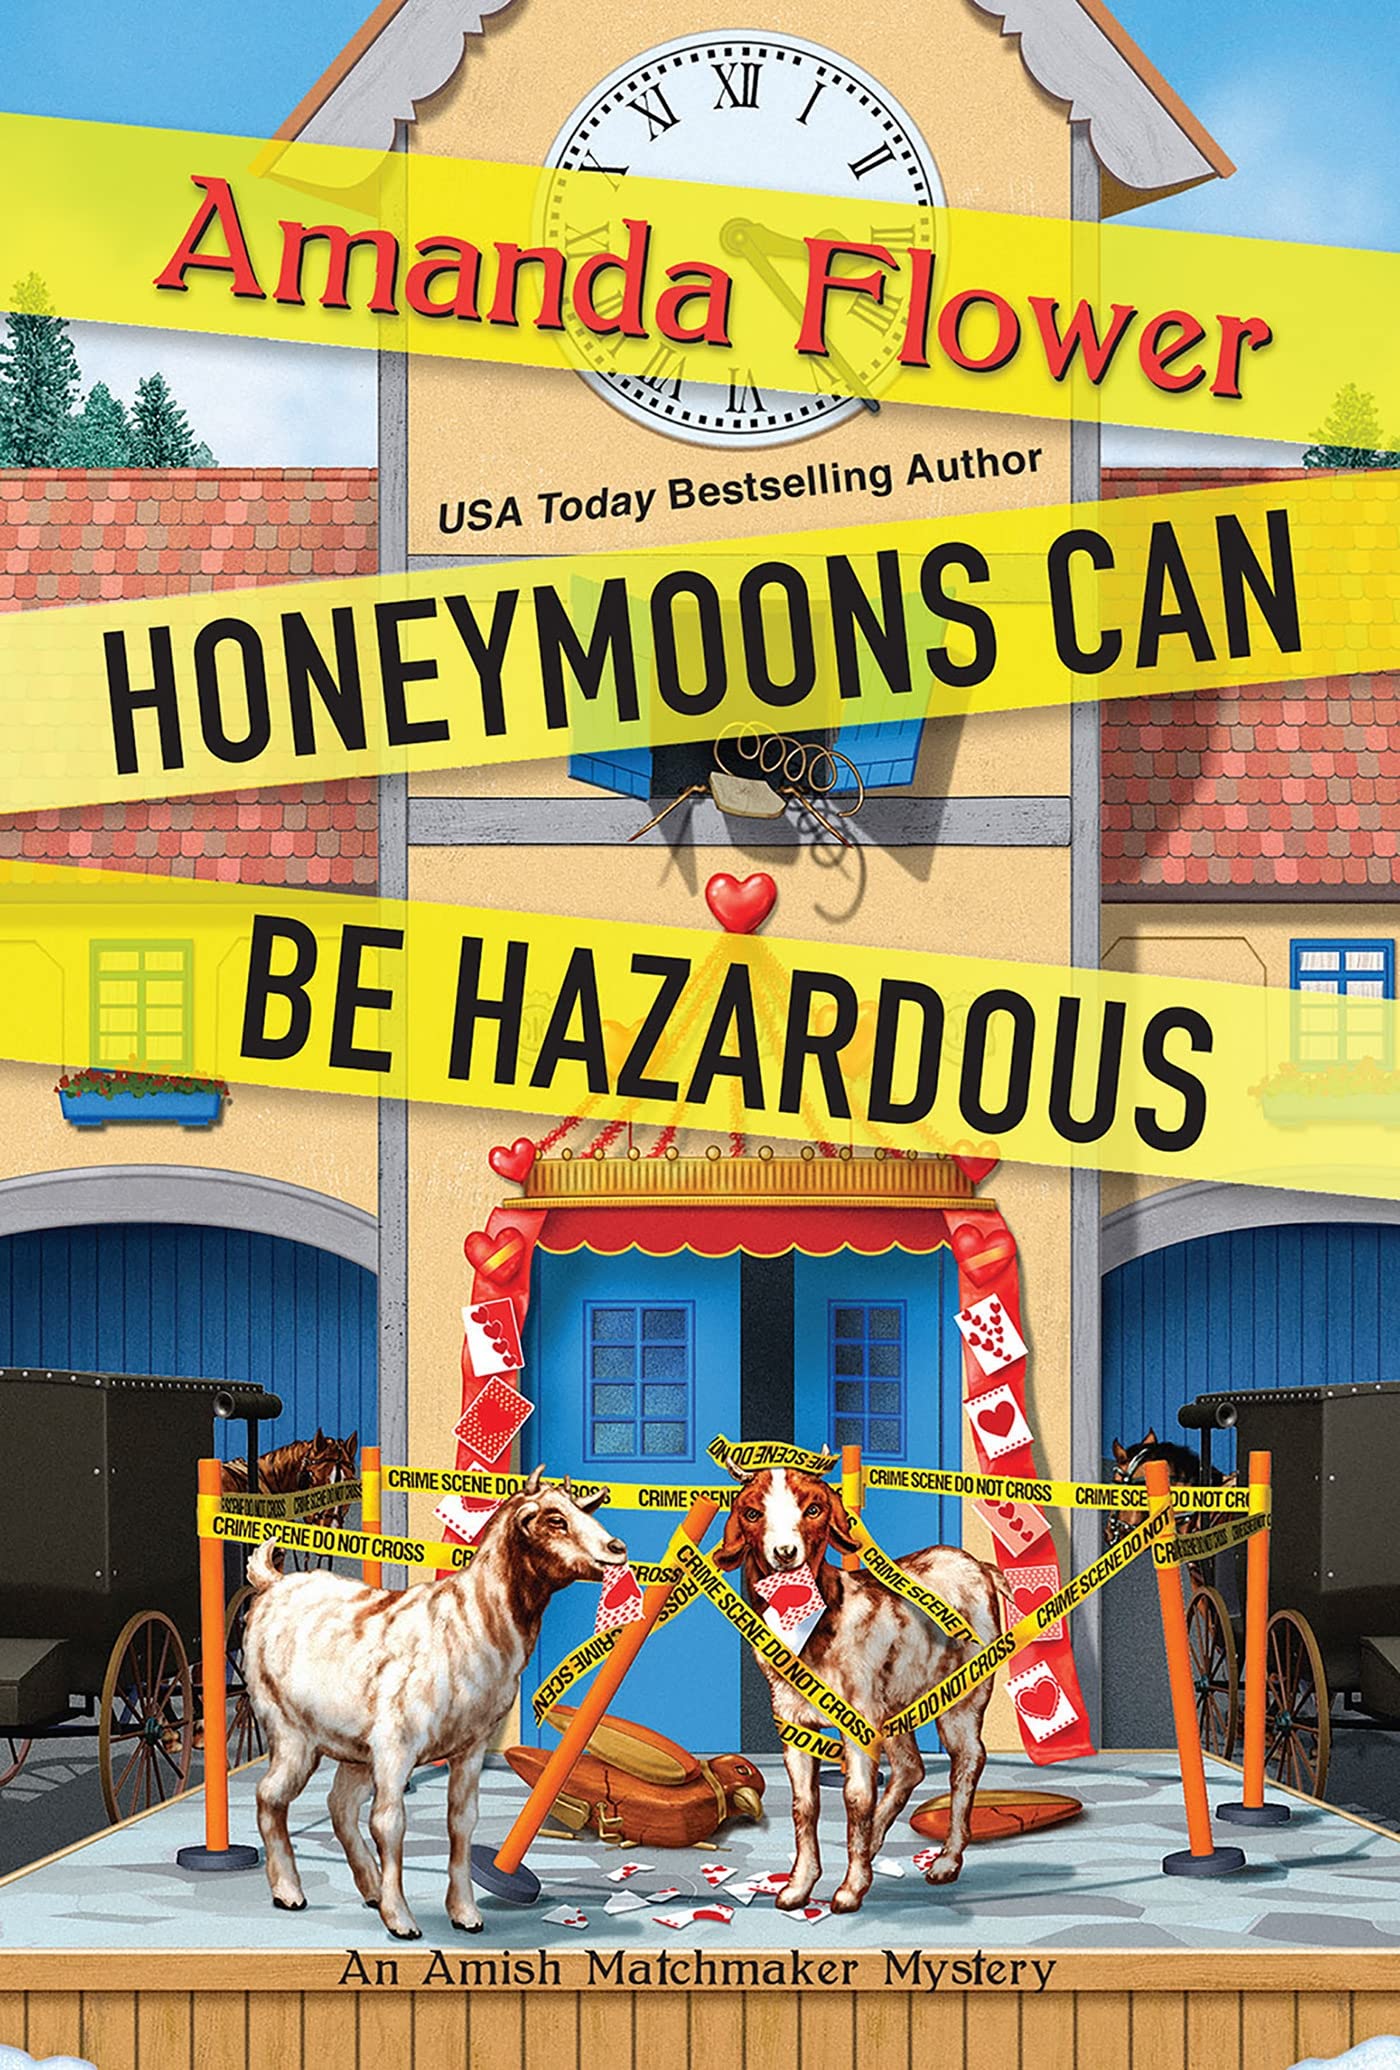 Honeymoons Can Be Hazardous SureShot Books